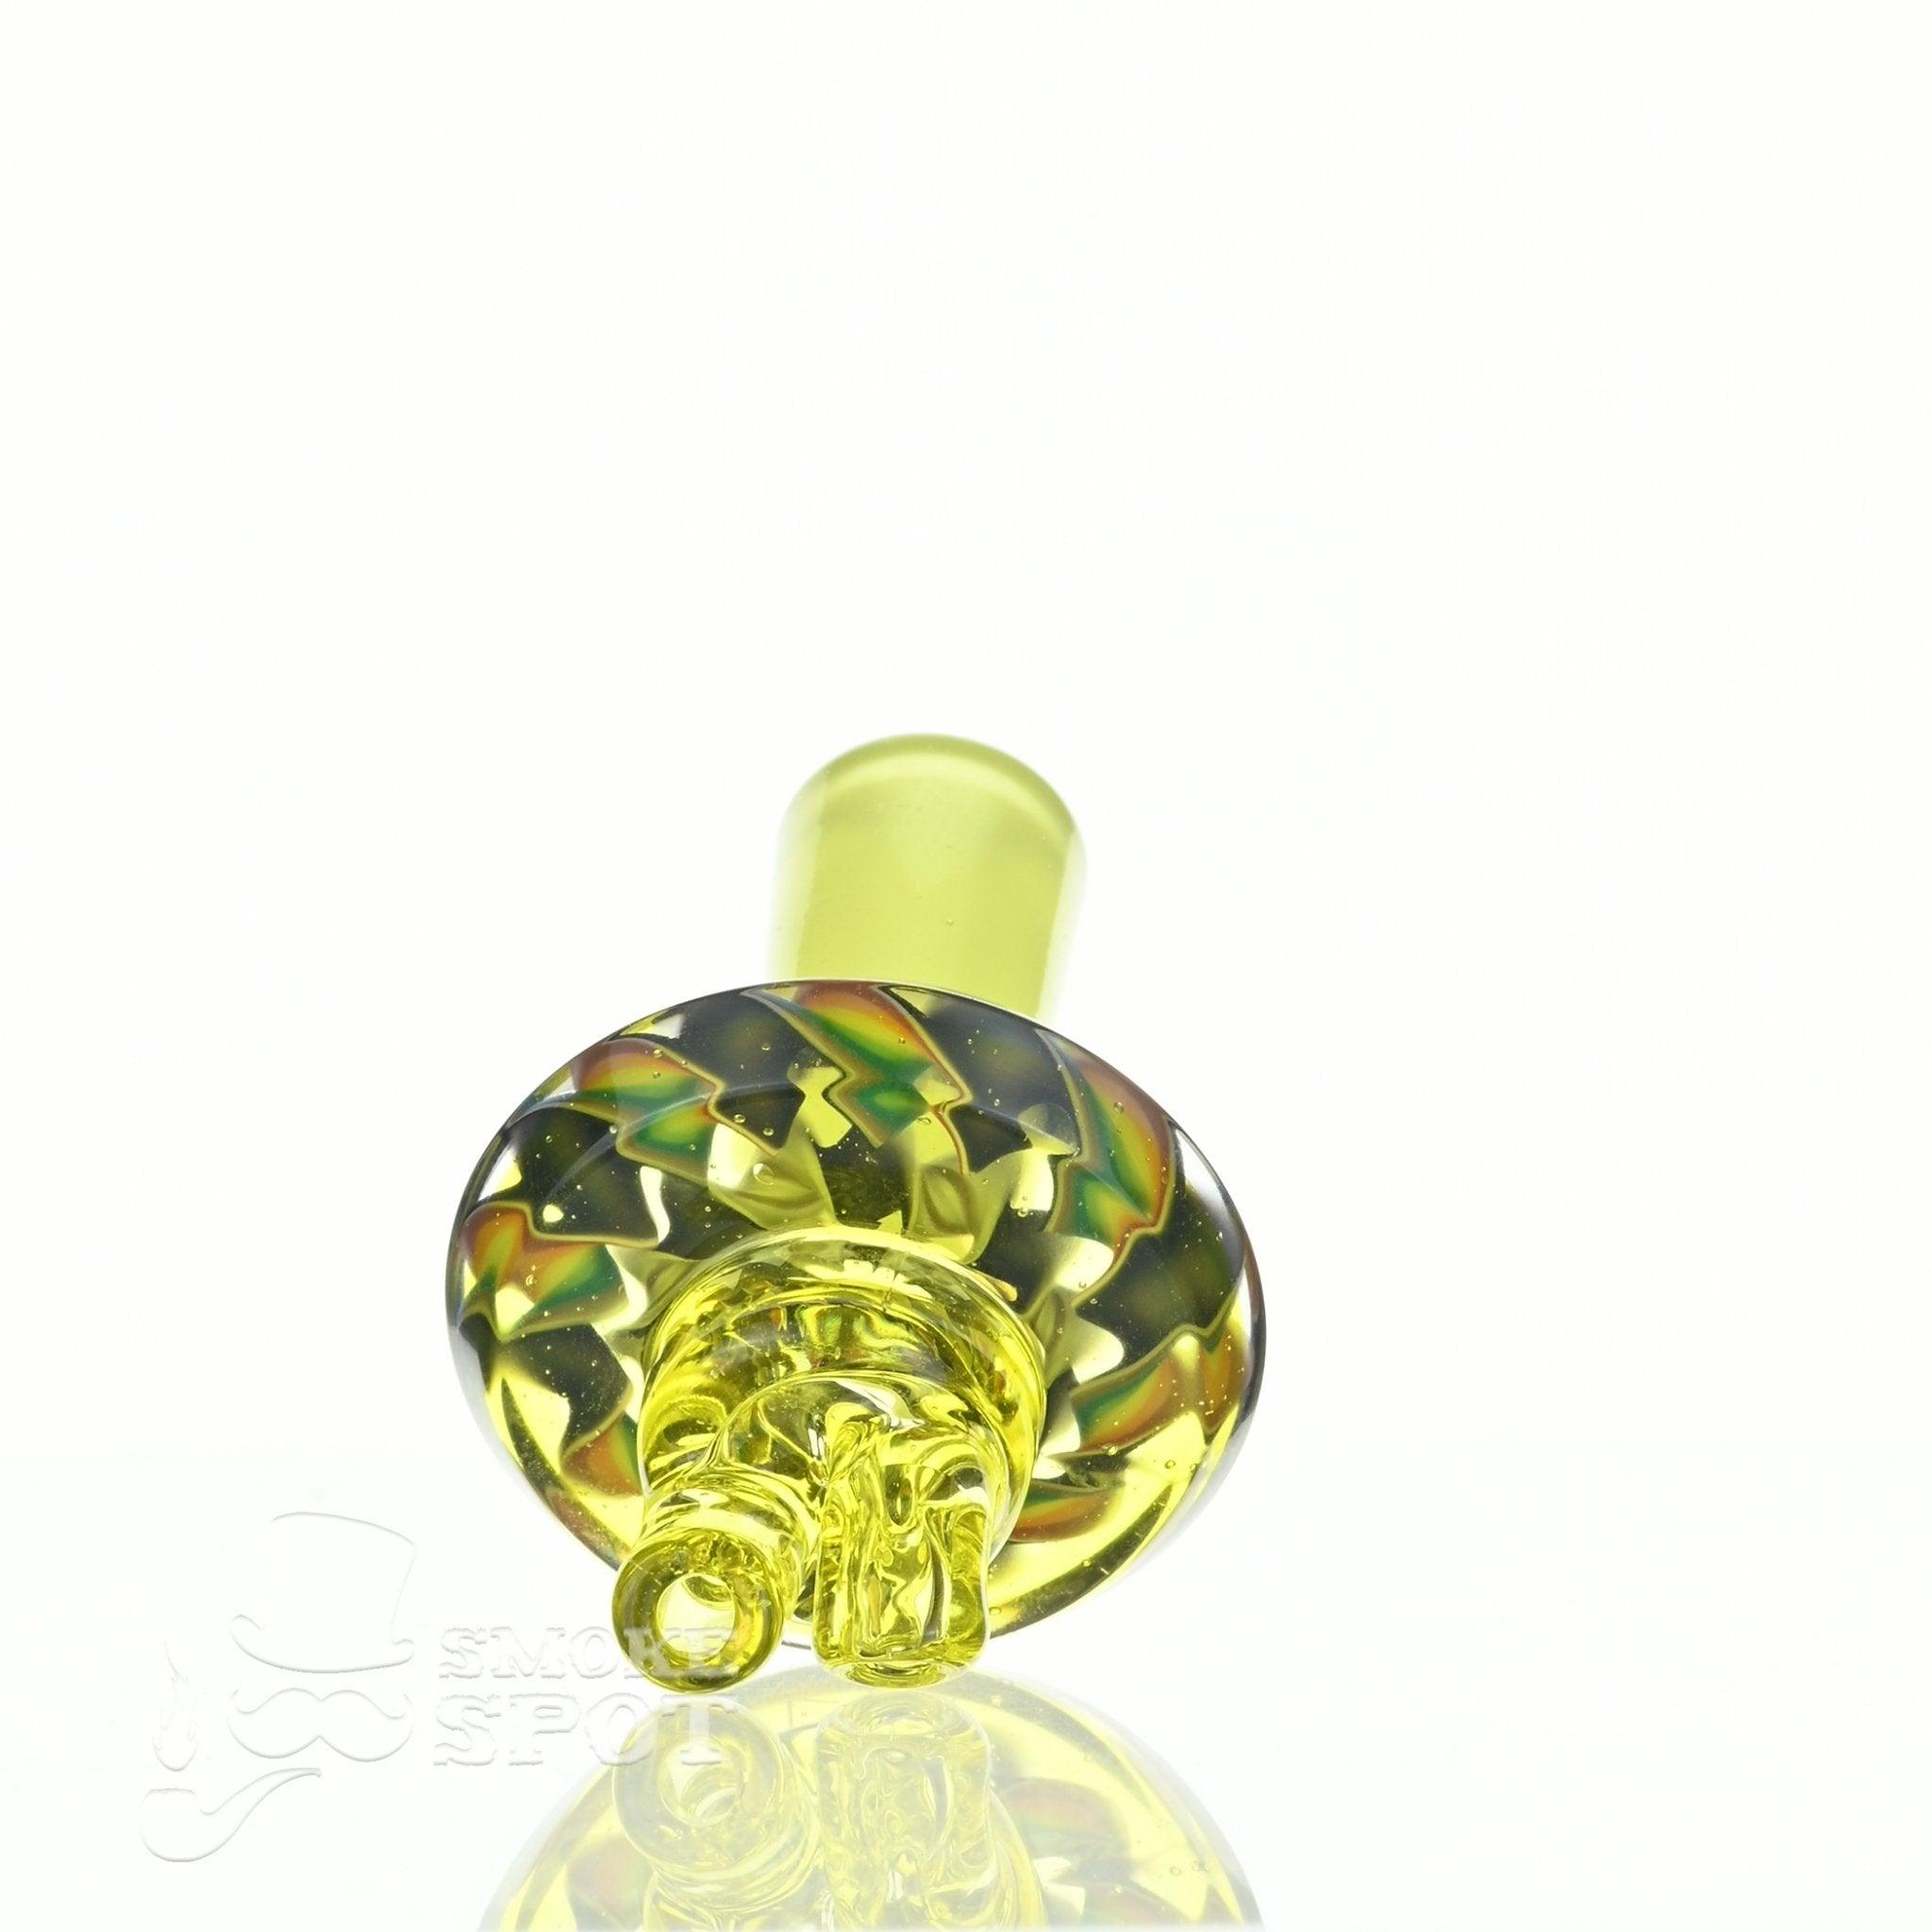 C-Lanni Lemon Lime x Brozay spinner cap - Smoke Spot Smoke Shop